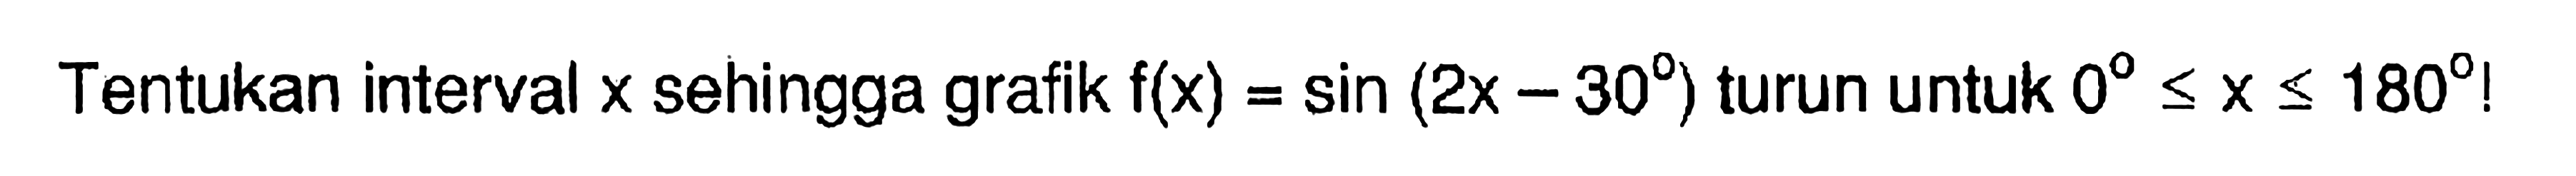 Tentukan interval x sehingga grafik f(x)= sin (2x - 30) turun untuk 0 <= x <= 180